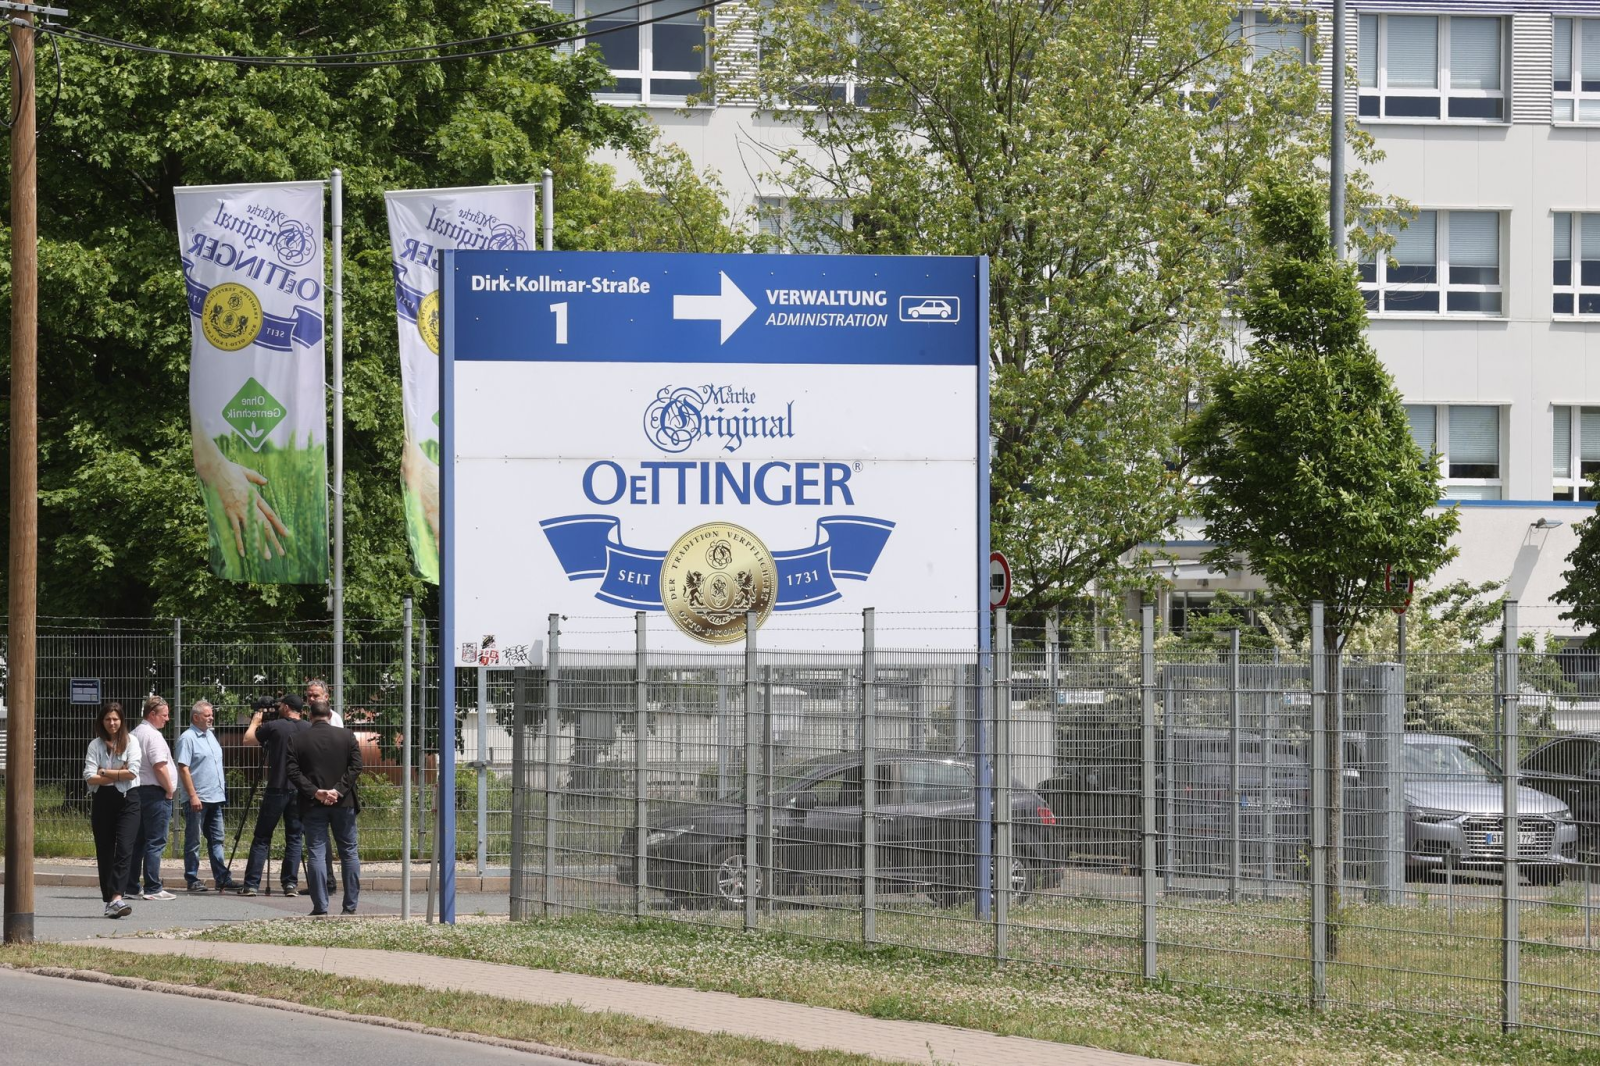 Der Standort der Oettinger Brauerei in Gotha soll nach Willen des Unternehmens geschlossen werden.